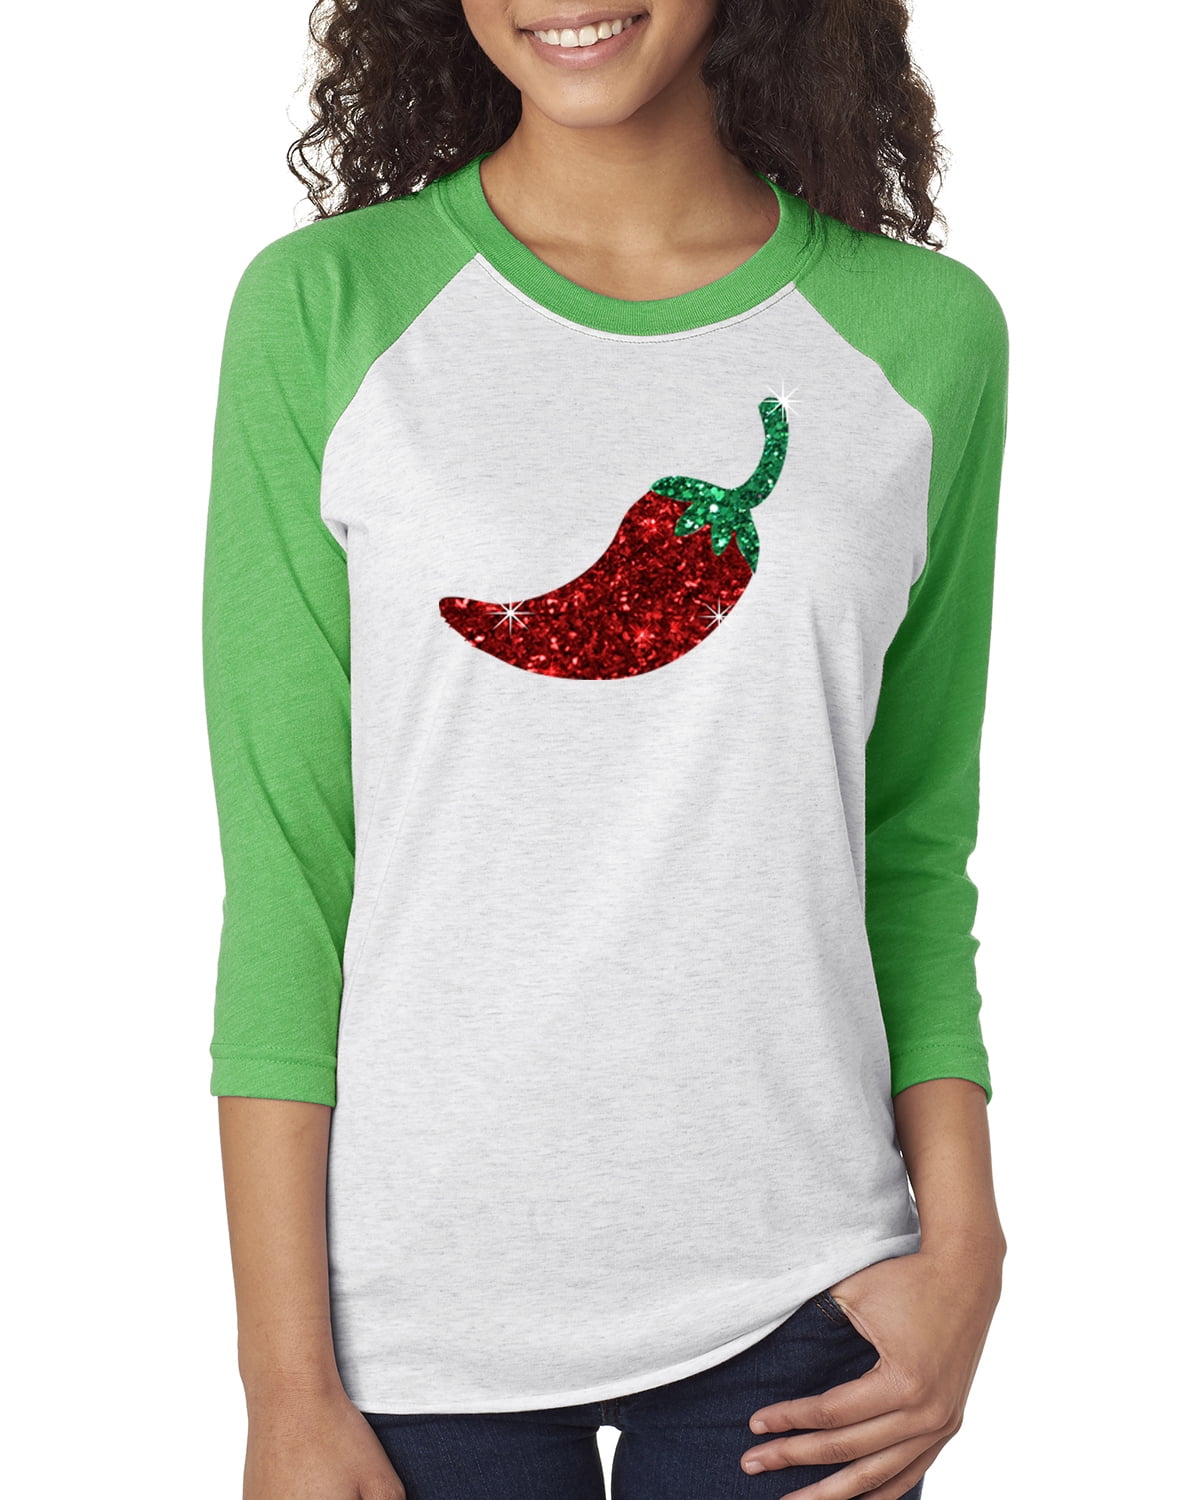 chili pepper shirt womens